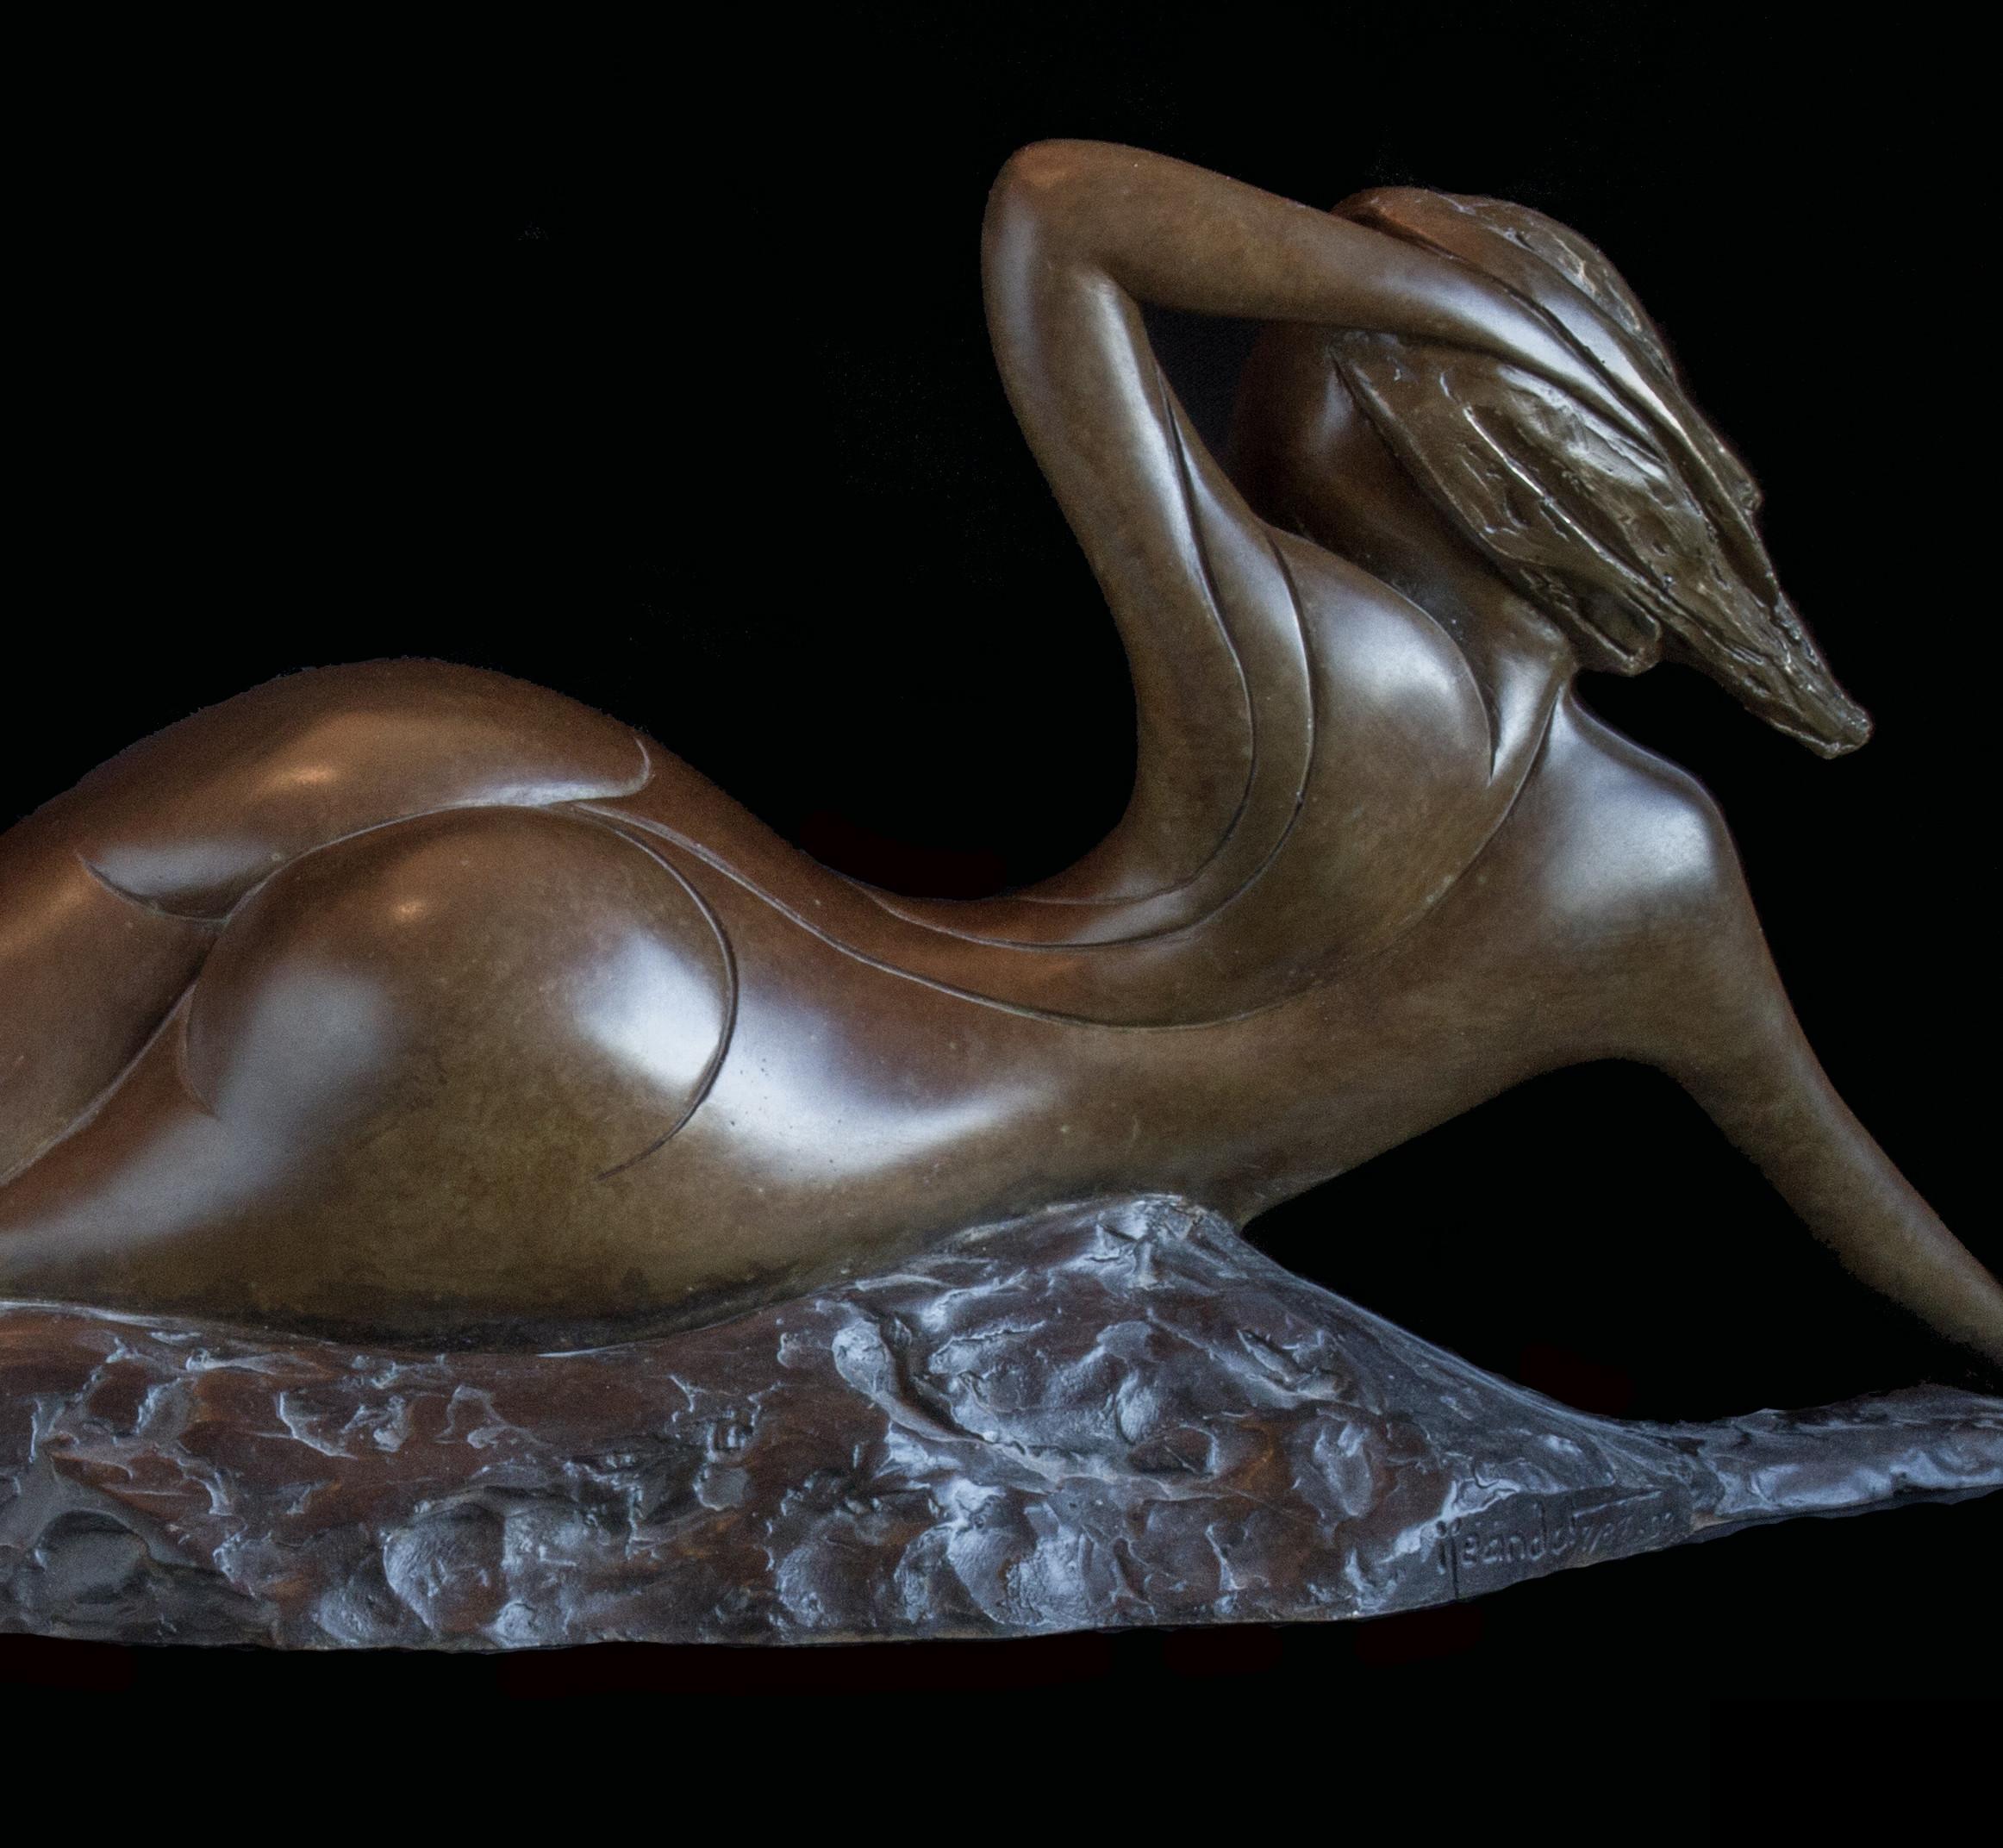 Diese Bronze von Isabelle Jeandot ist ein Exemplar aus einer limitierten Serie von zwölf Originalskulpturen und wird mit dem Echtheitszertifikat der Gießerei geliefert.

Die Künstlerin Isabelle Jeandot ist eine leidenschaftliche Anhängerin des